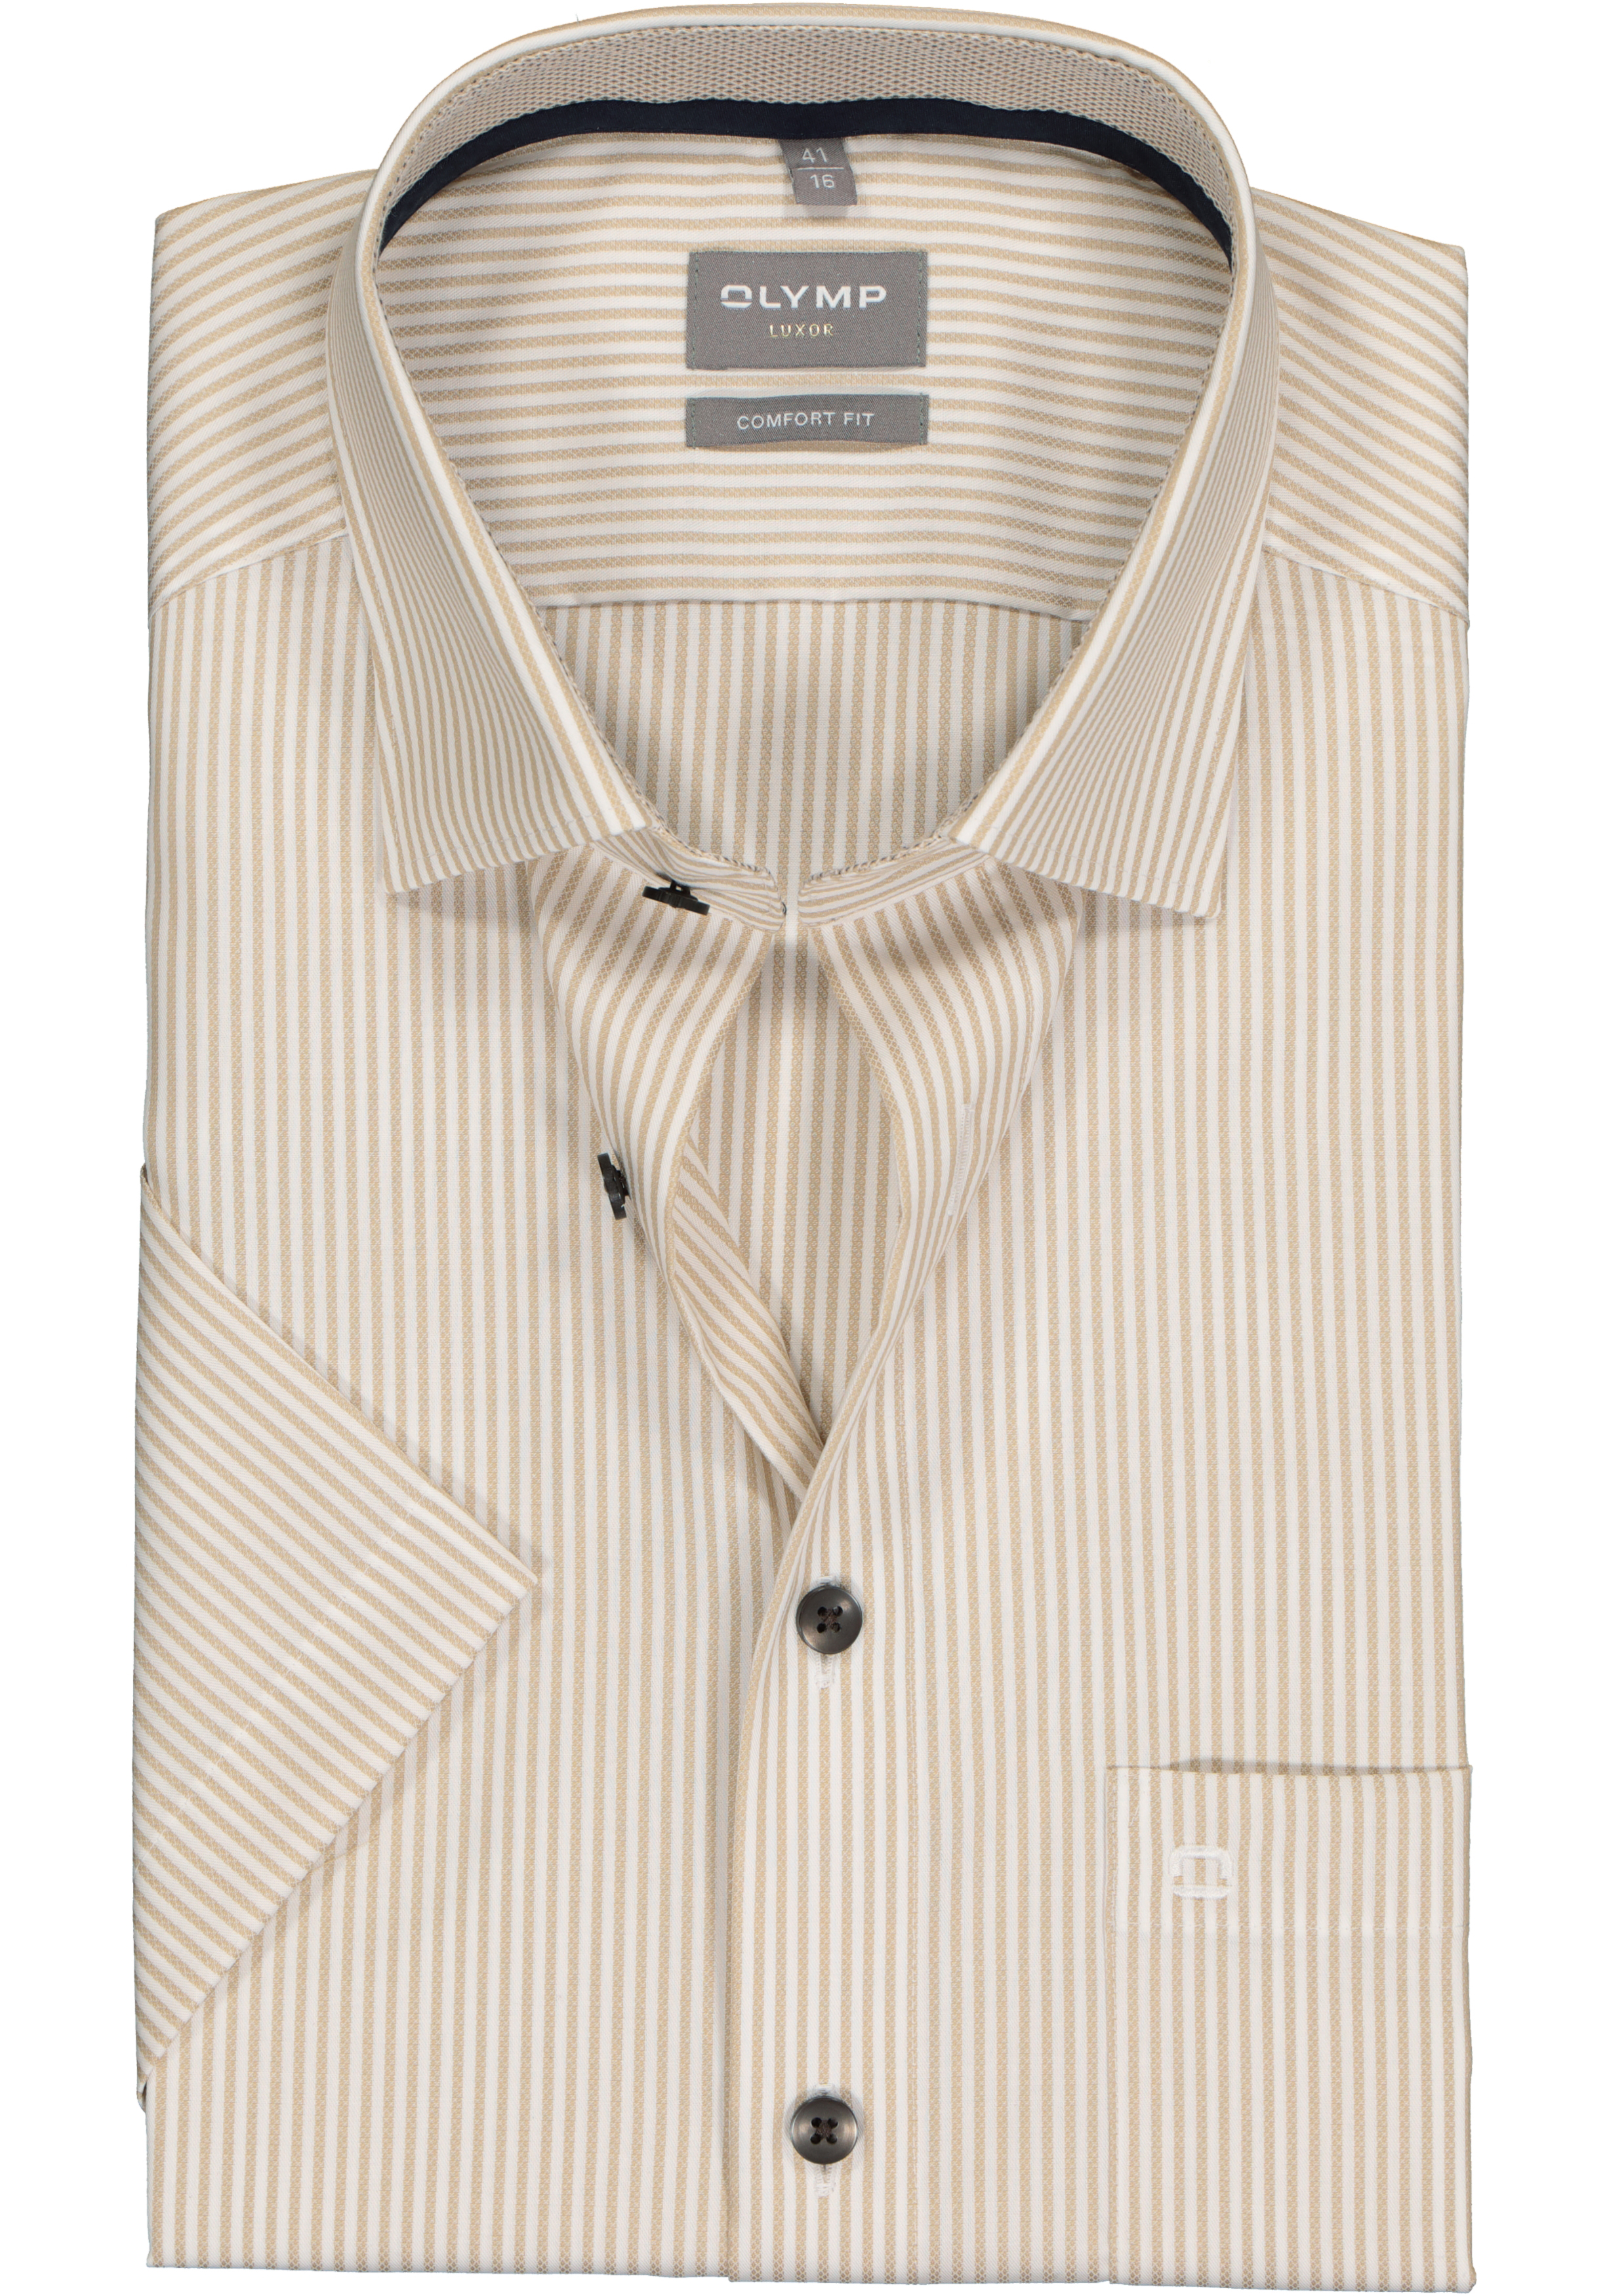 OLYMP comfort fit overhemd, korte mouw, structuur, beige met wit gestreept (contrast)